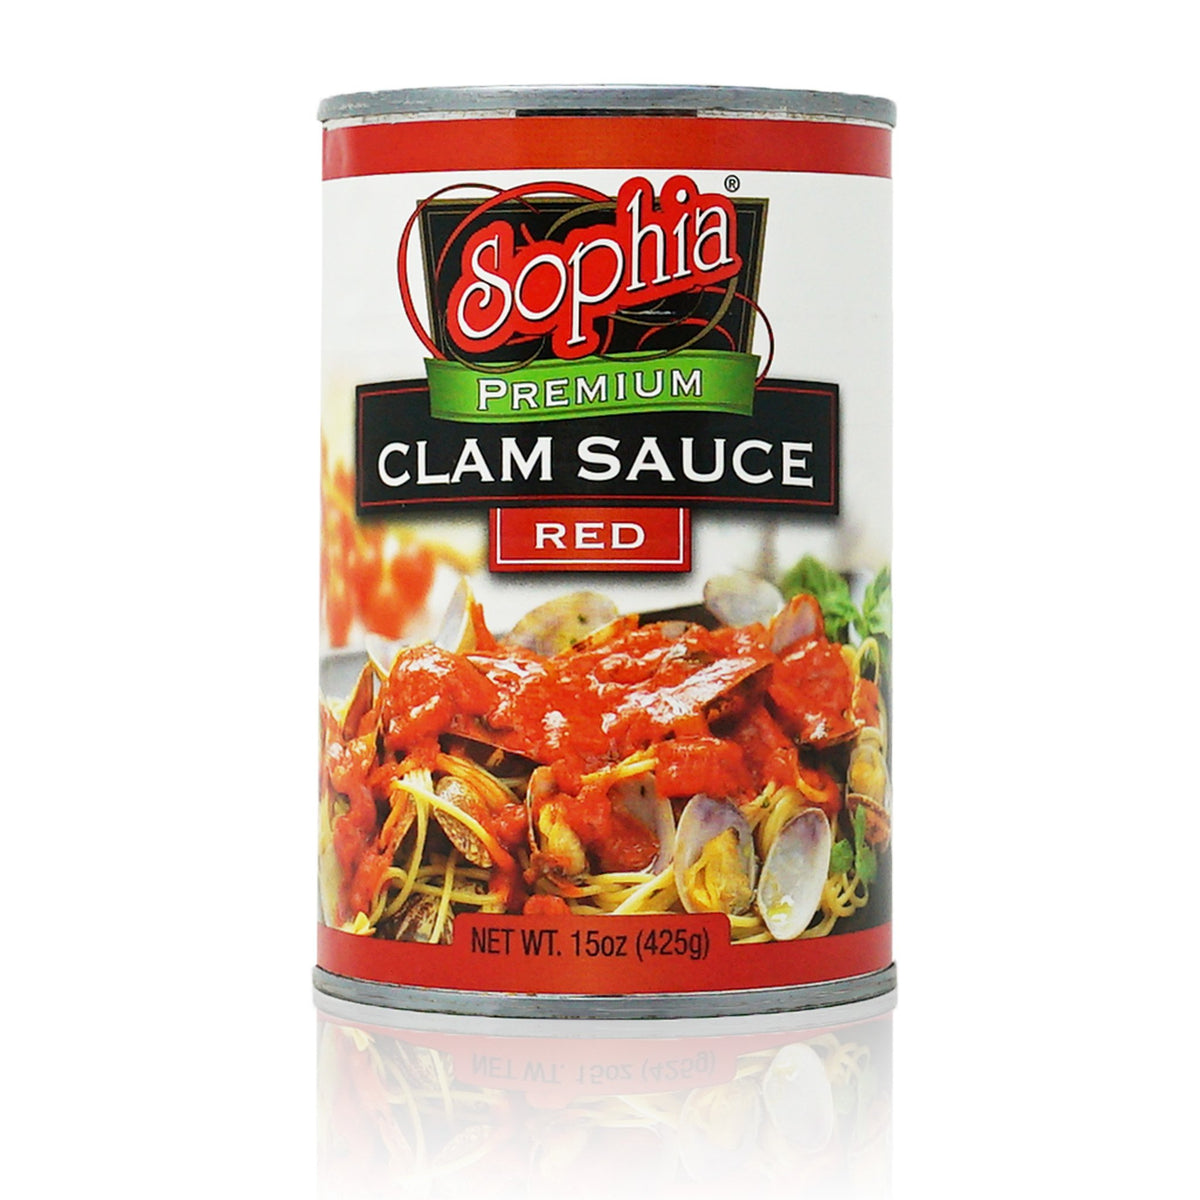 Sophia Clam Sauce - Red